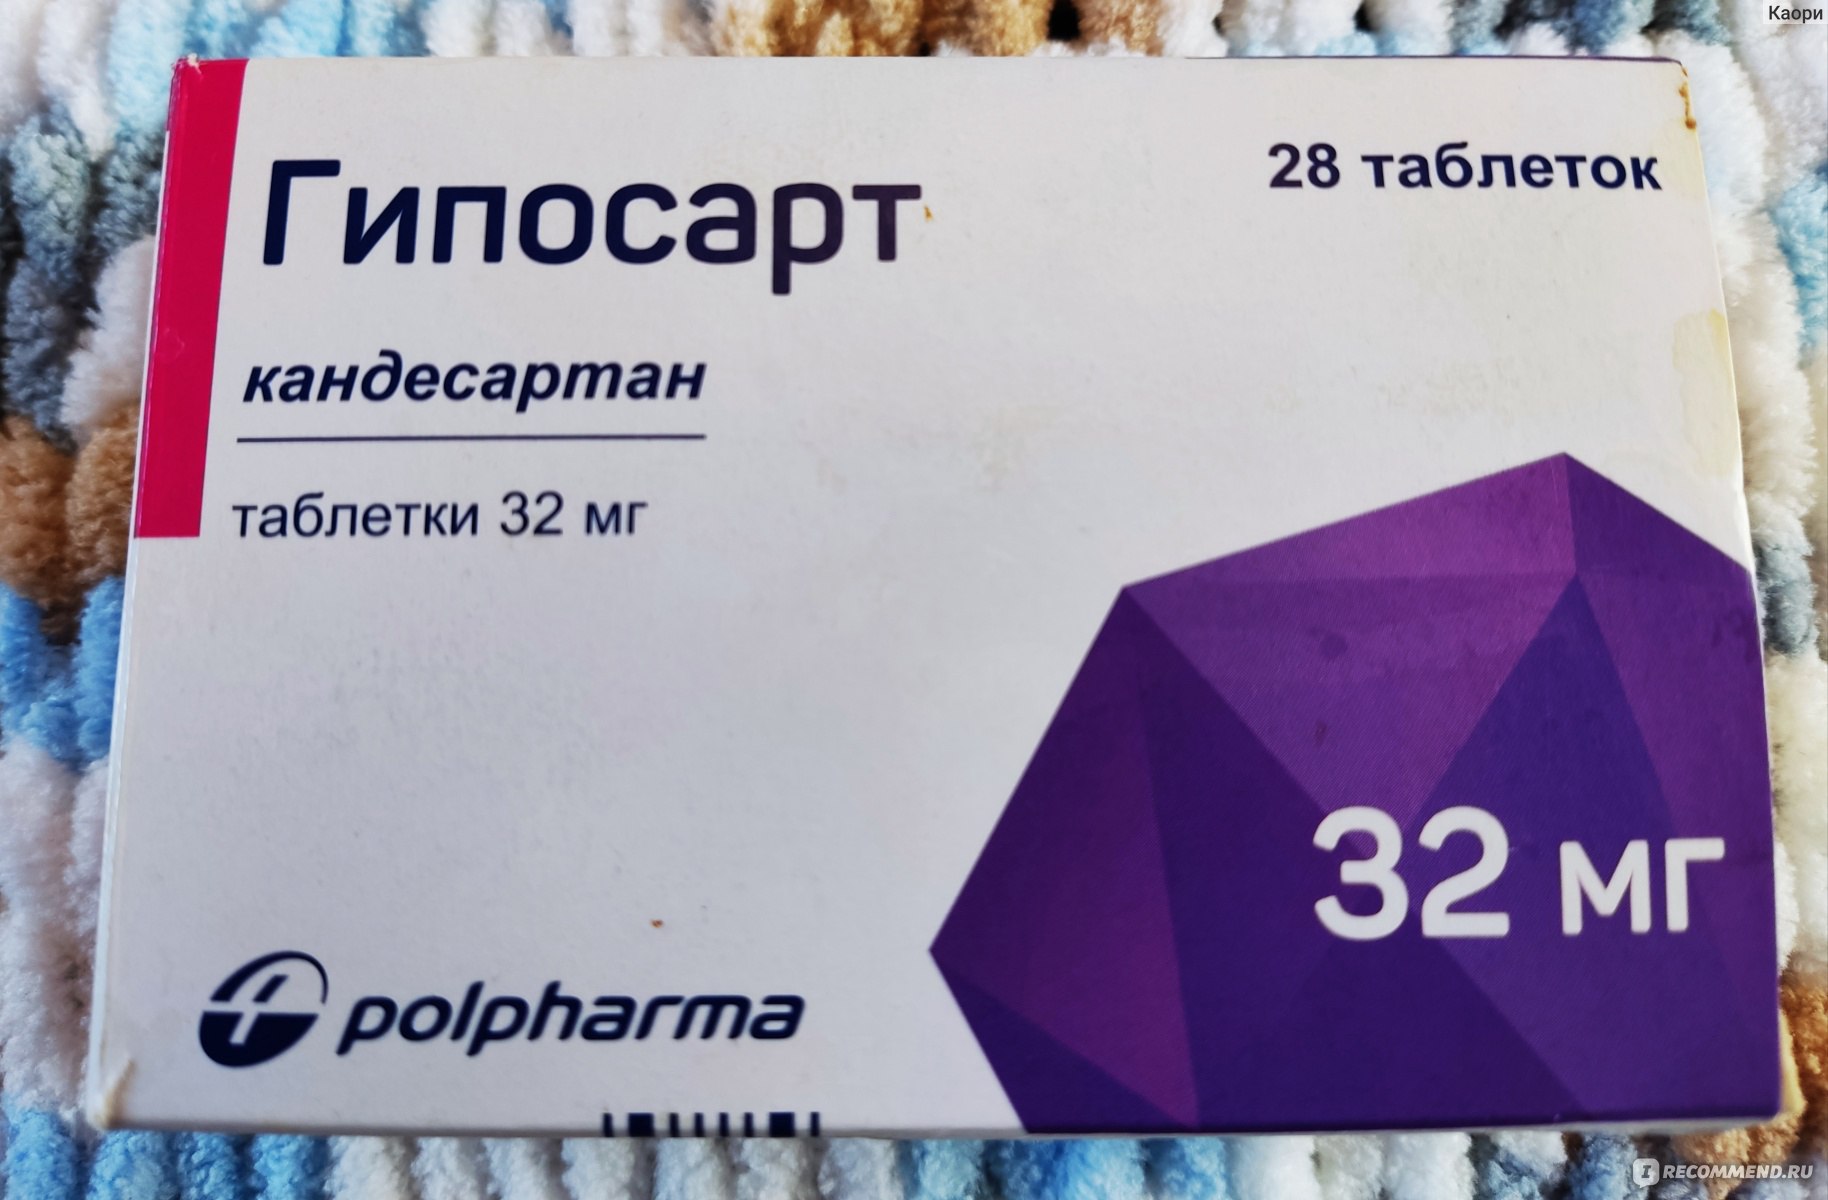 Таблетки Polpharma Гипосарт - «Очень хорошее лекарство от гипертонии .